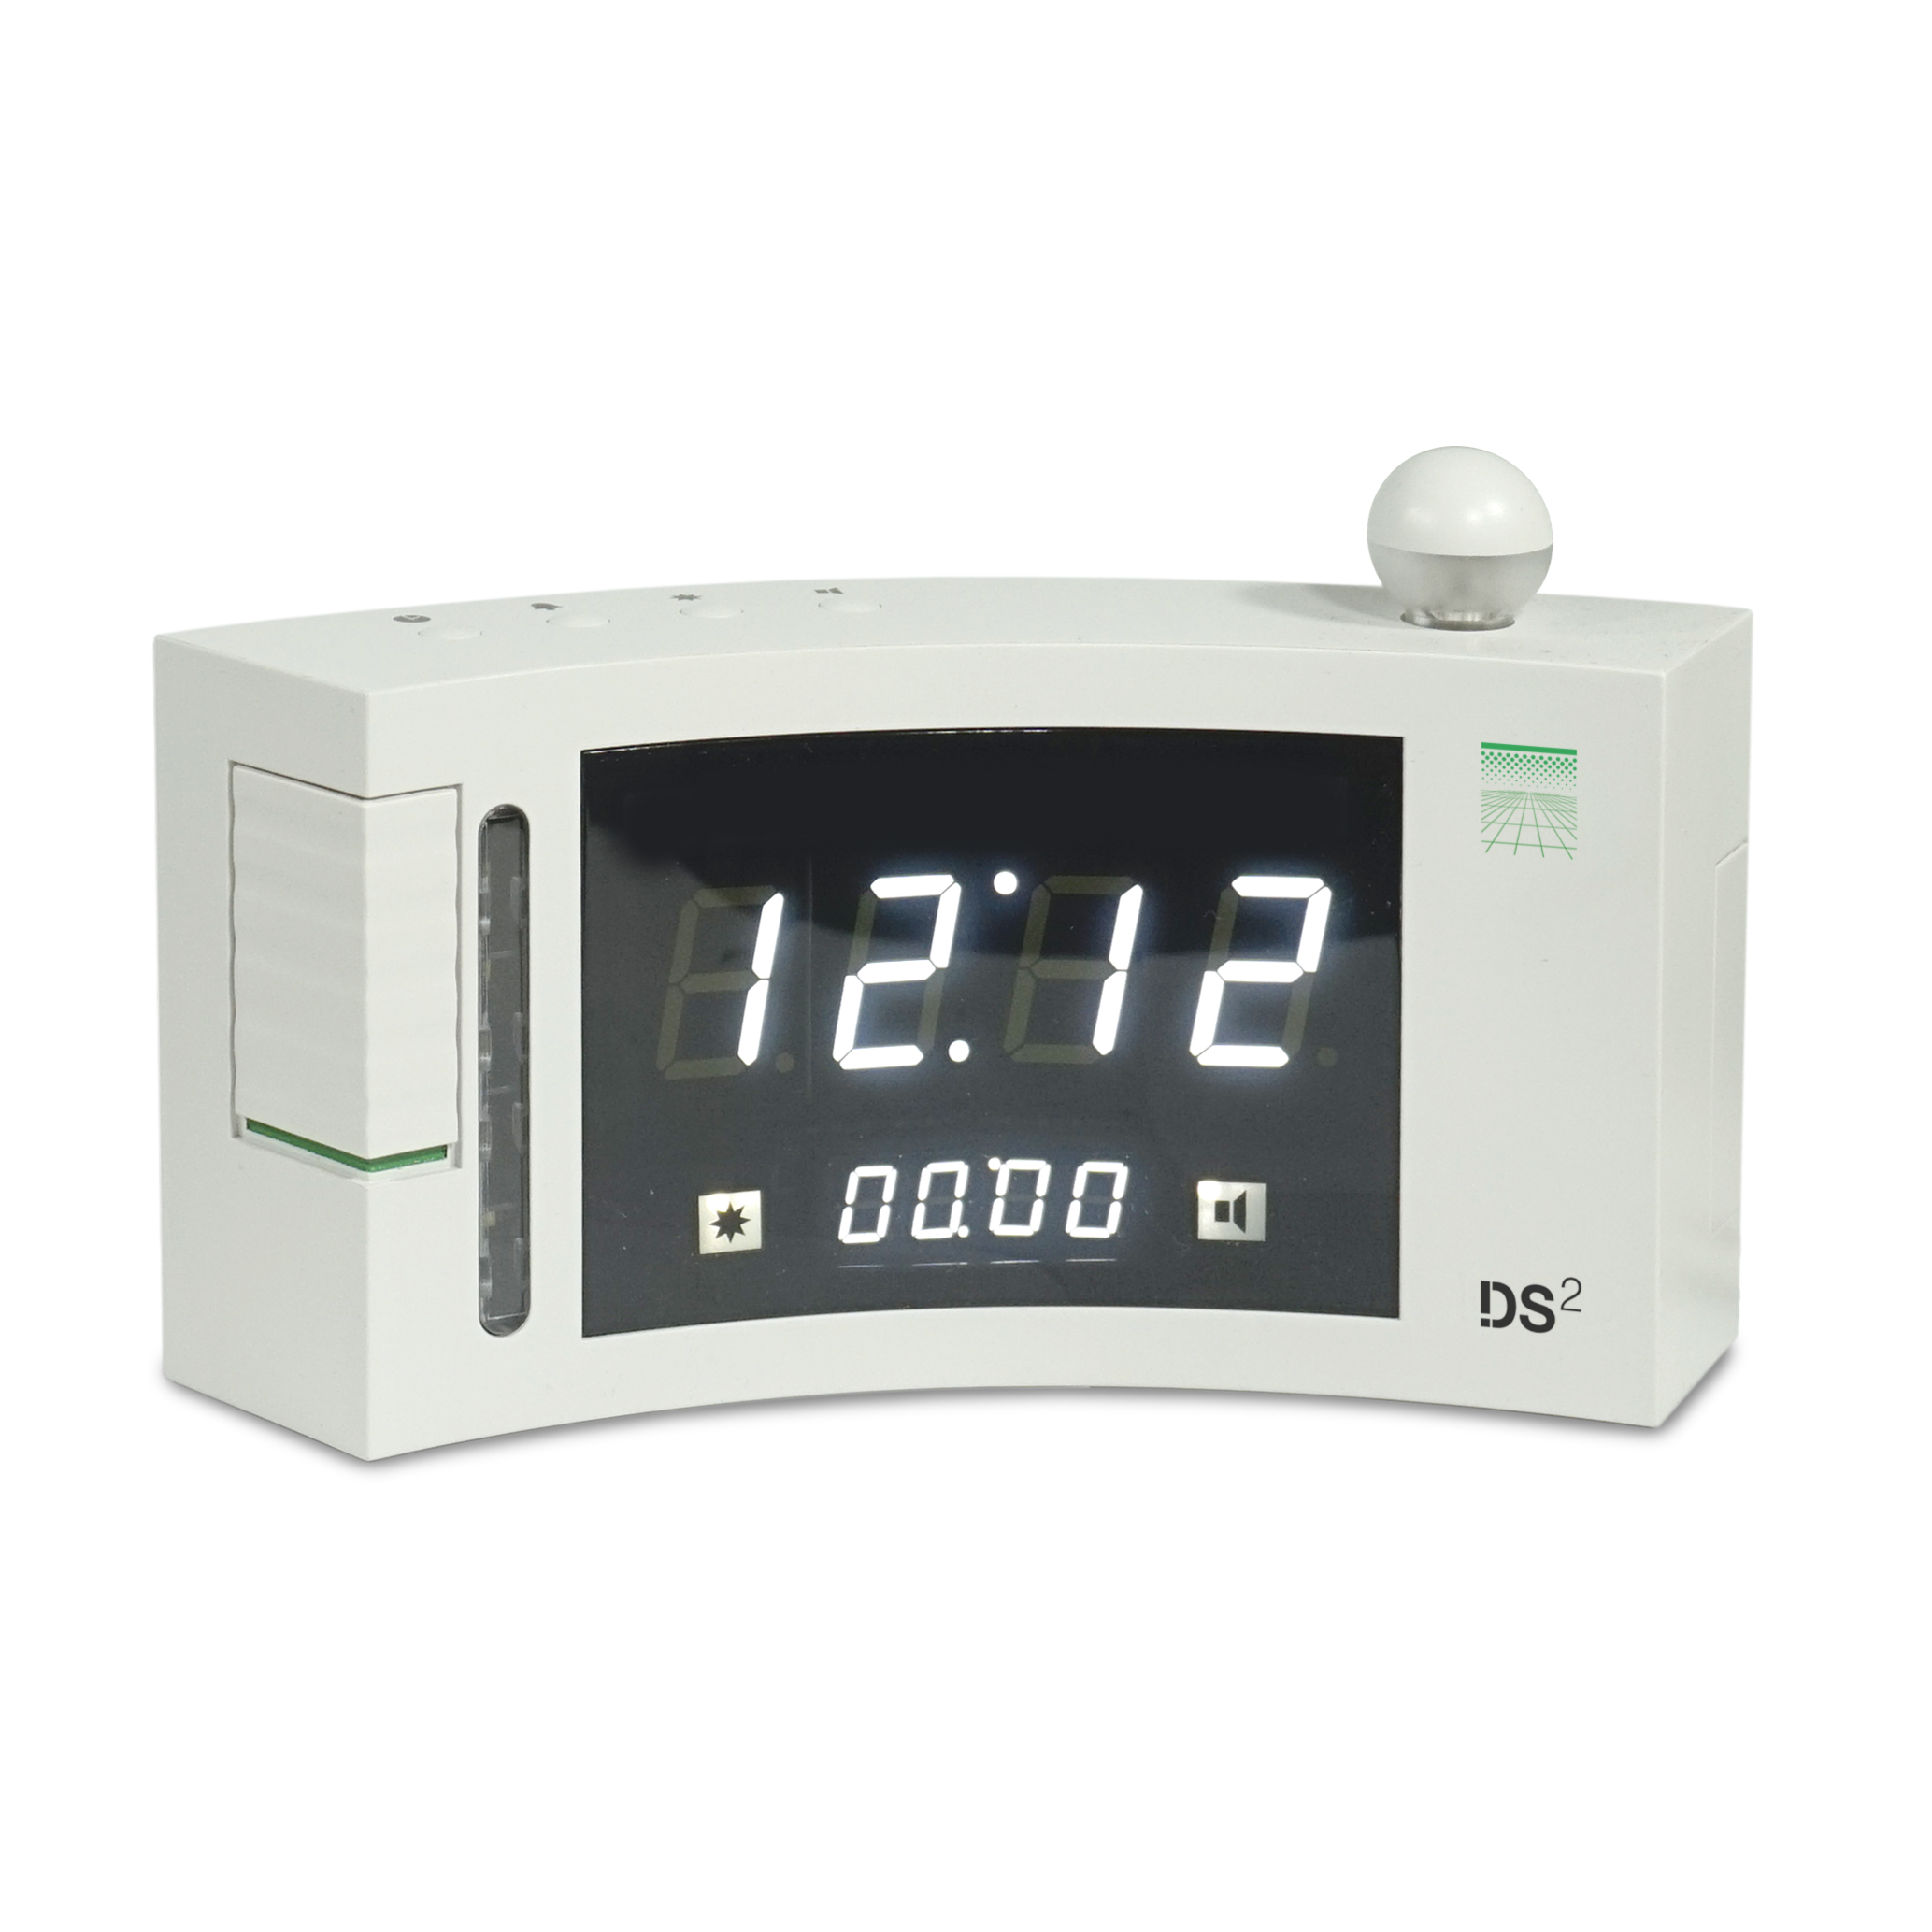 Digital alarm clock DS-2